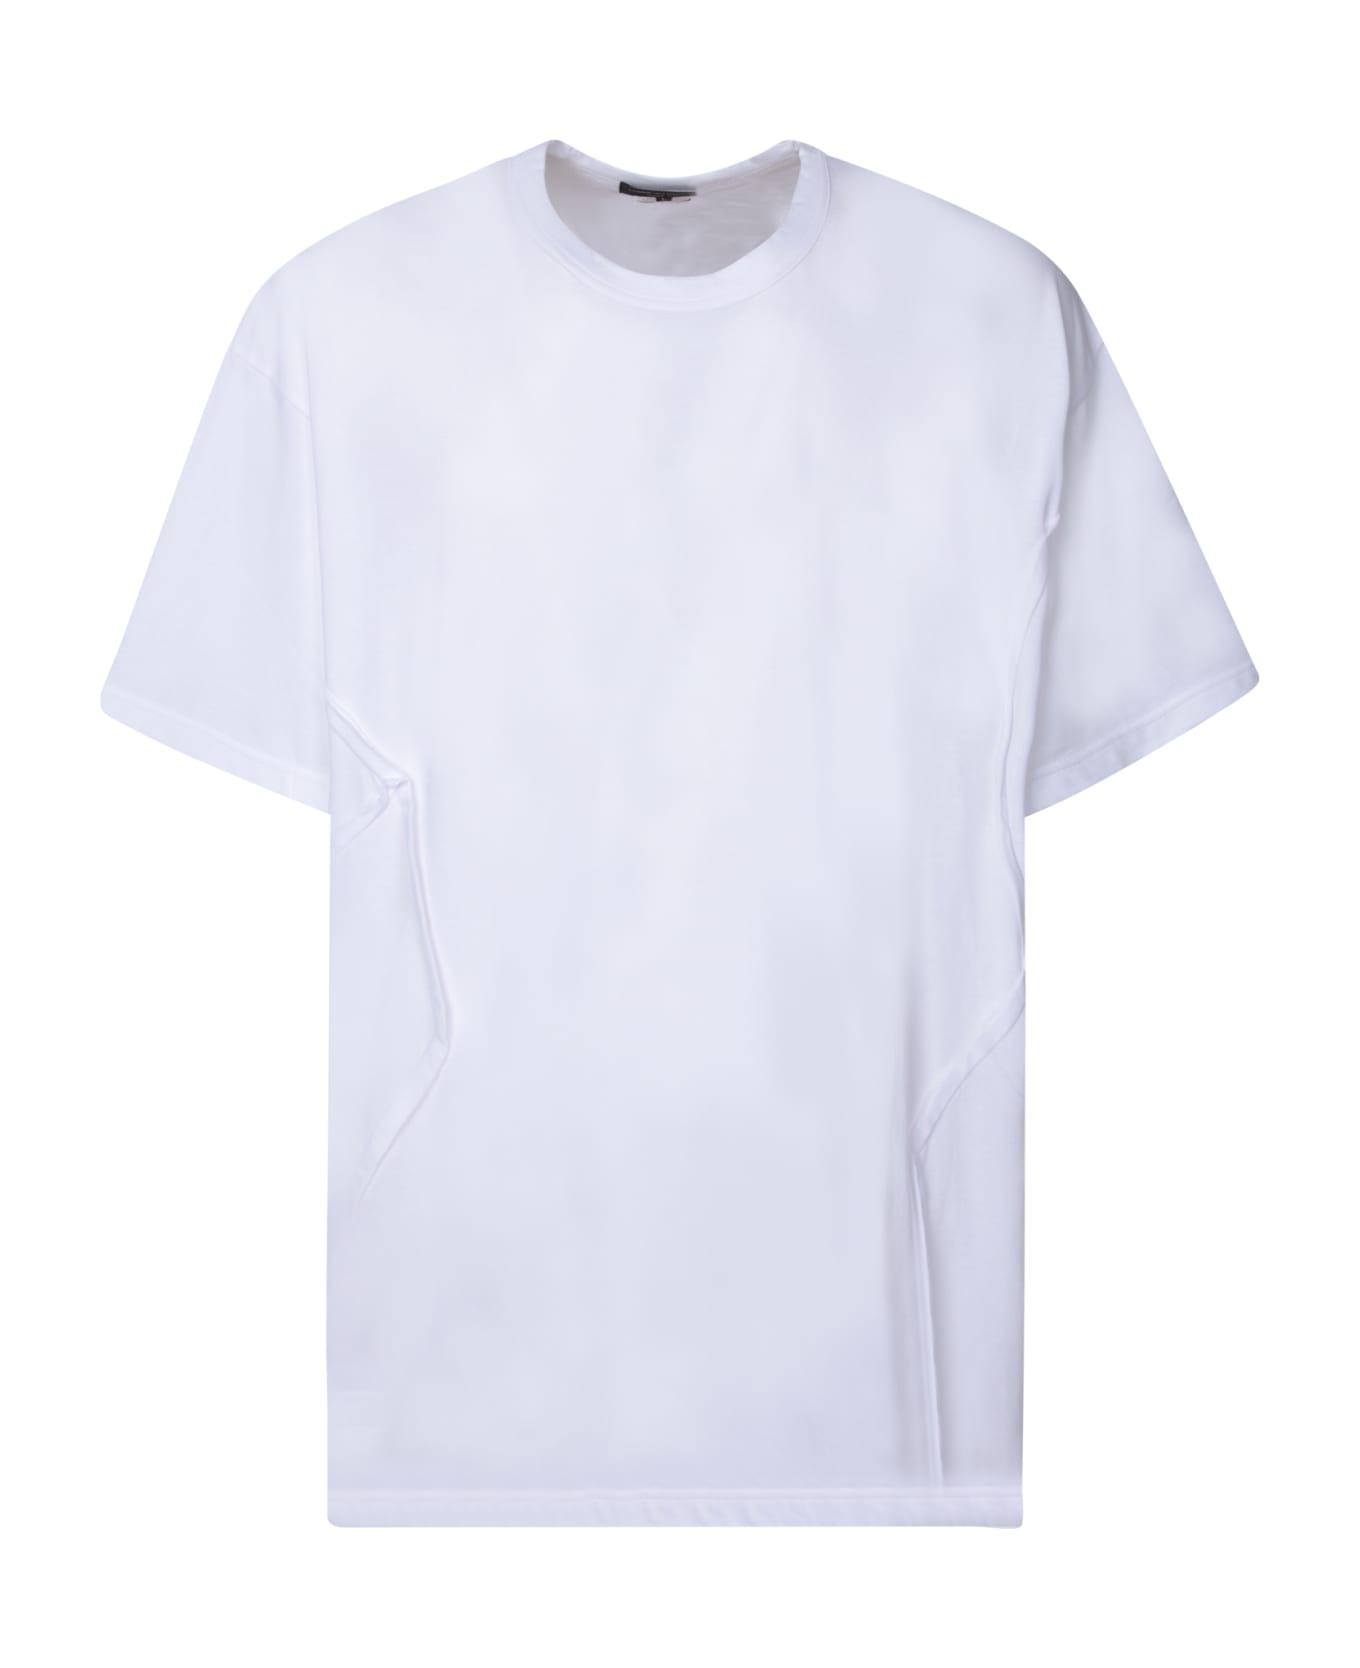 Comme Des Garçons Homme Plus Asymmetrical Lines White T-shirt - White